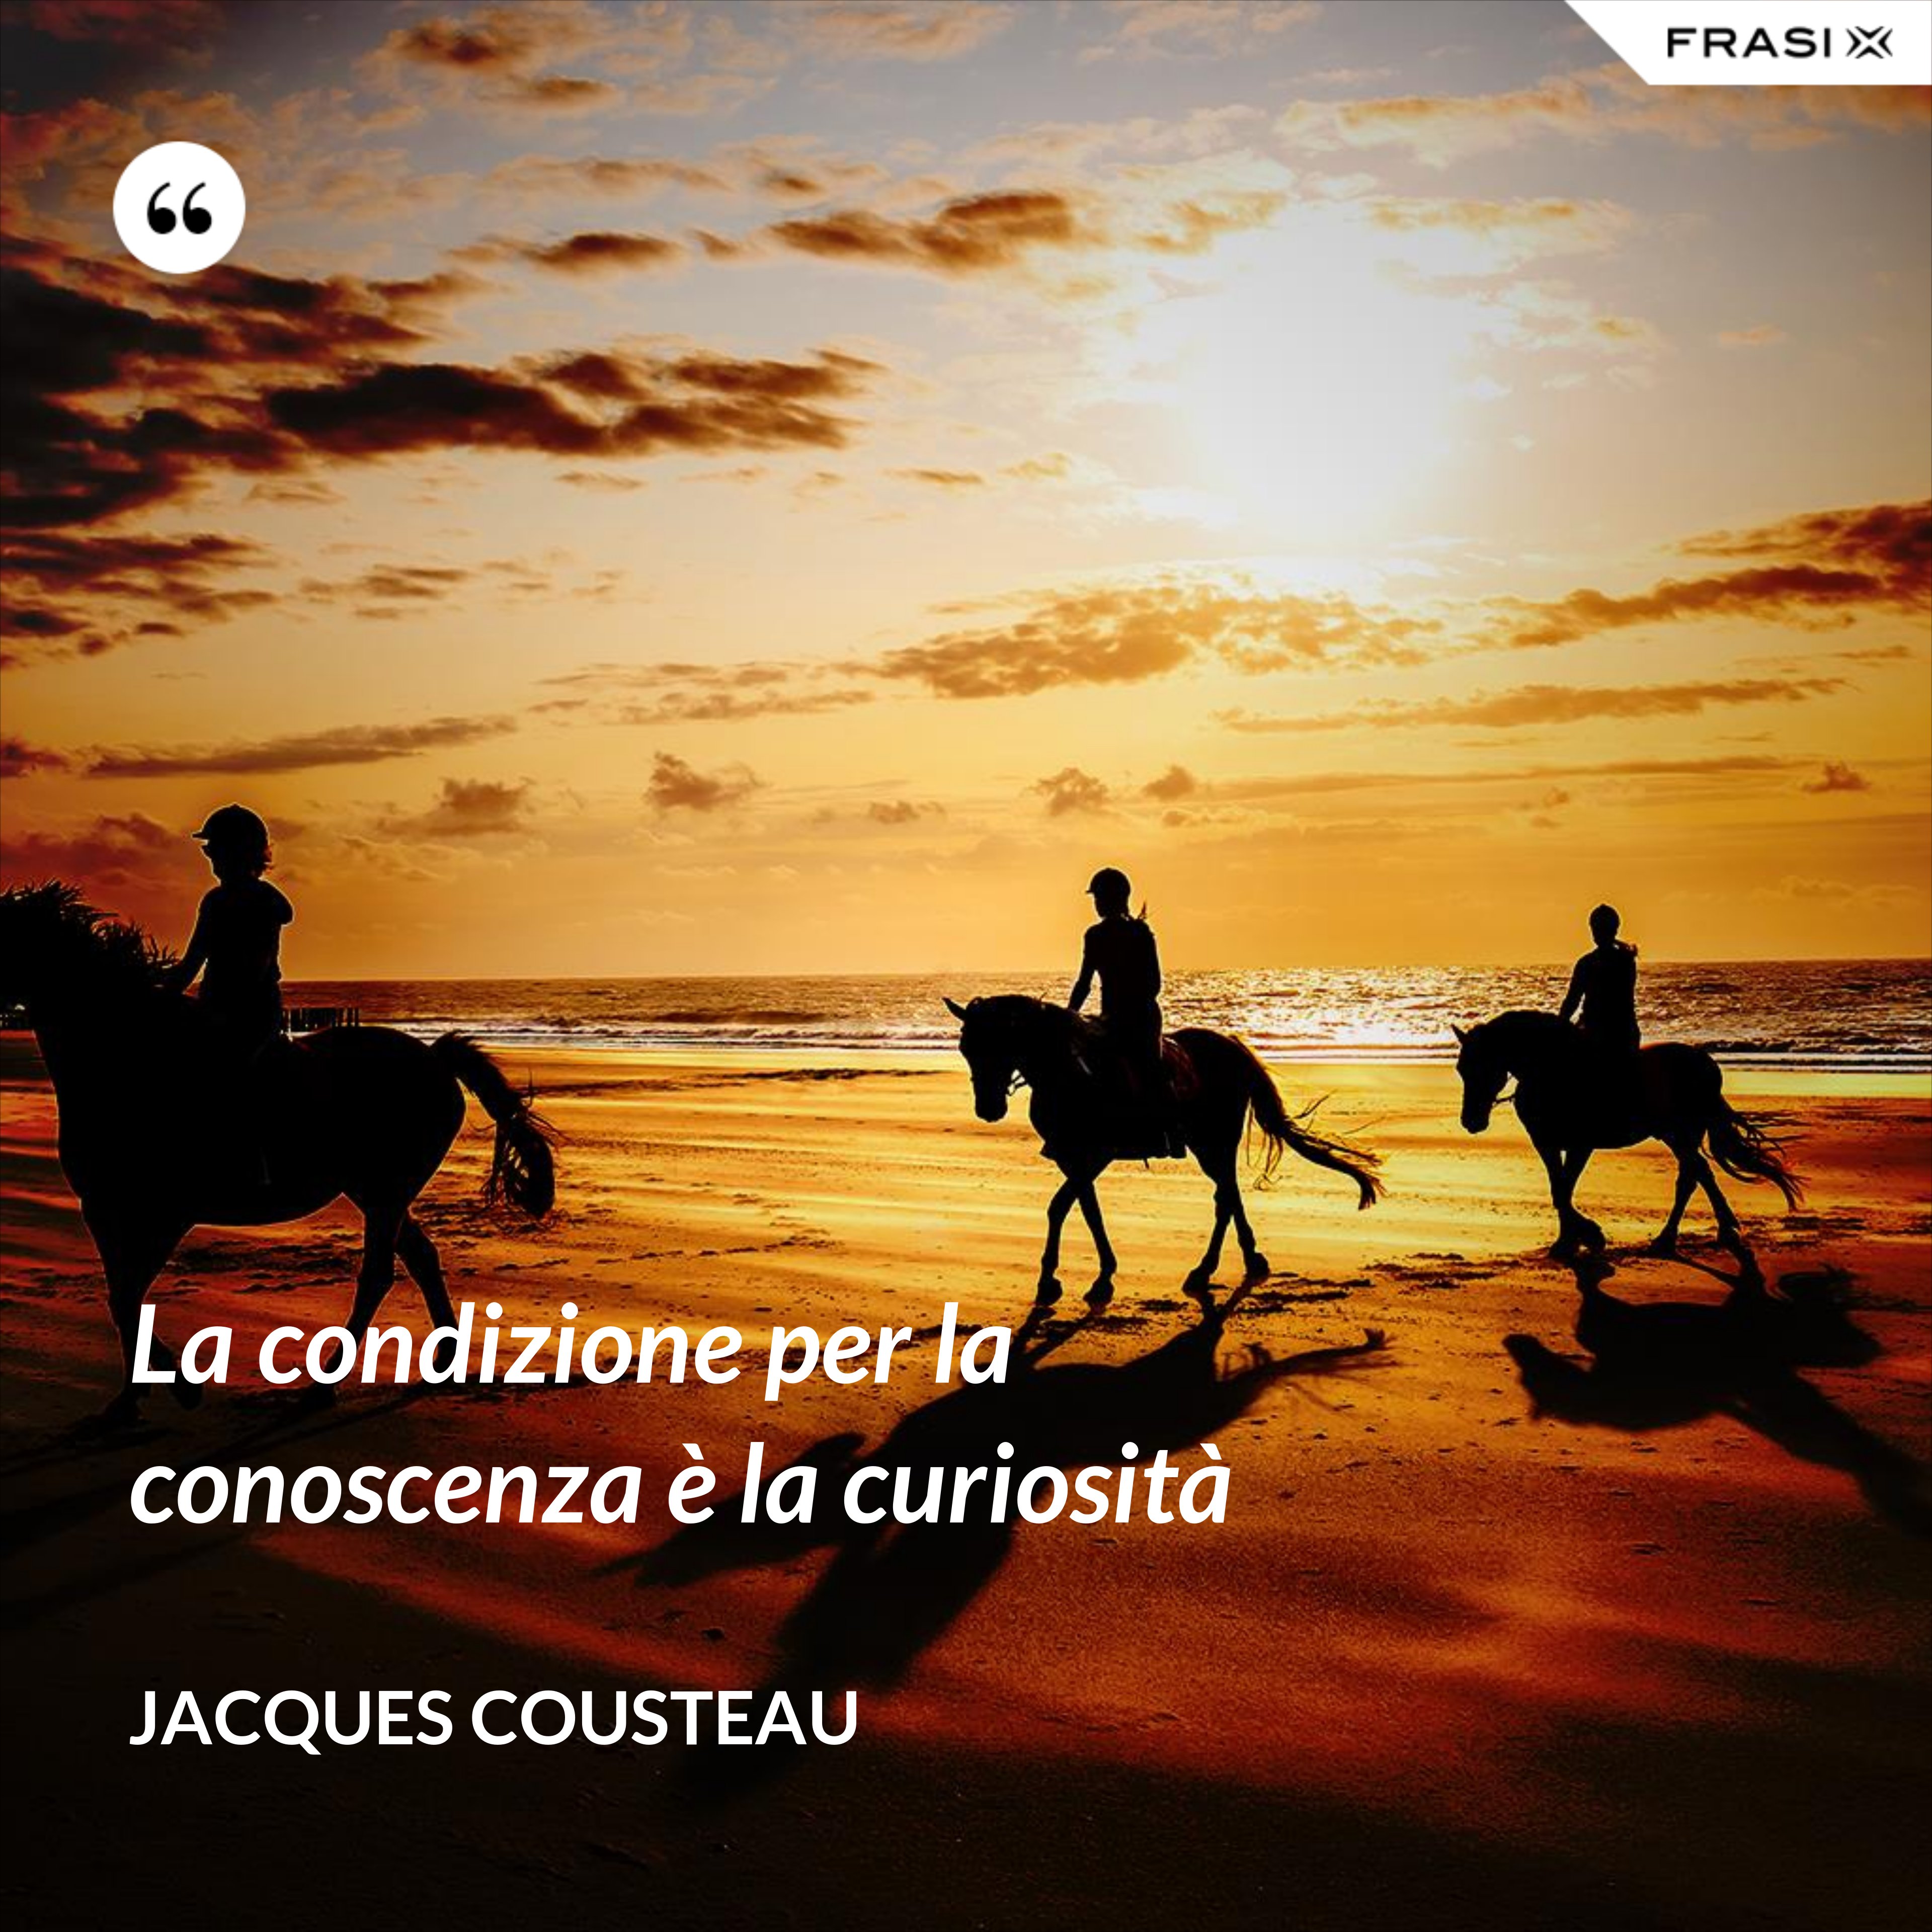 La condizione per la conoscenza è la curiosità - Jacques Cousteau